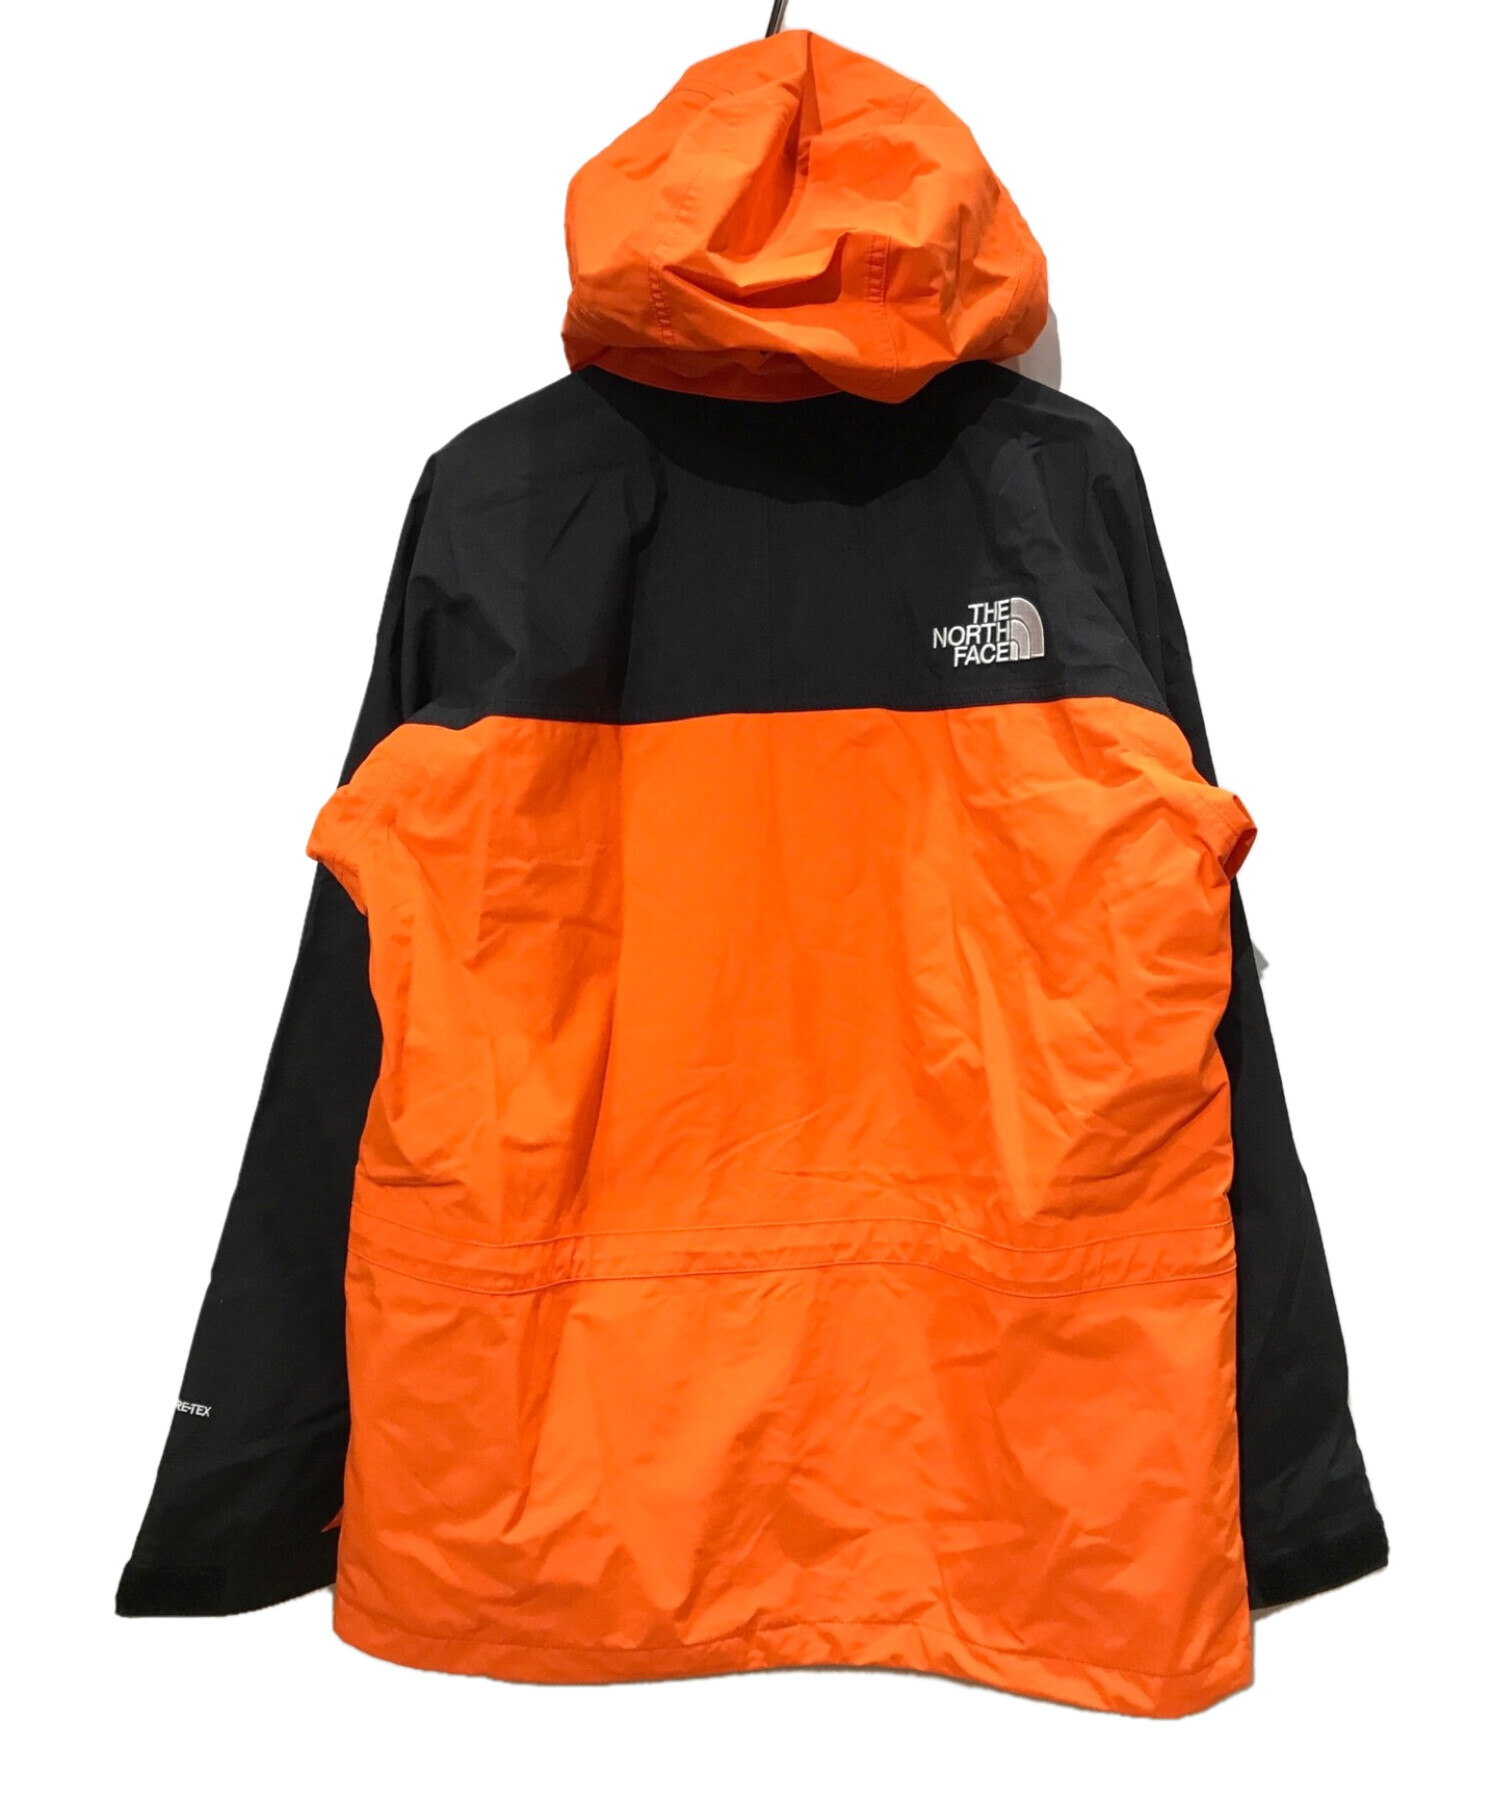 THE NORTH FACE (ザ ノース フェイス) マウンテンライトジャケット オレンジ サイズ:XL